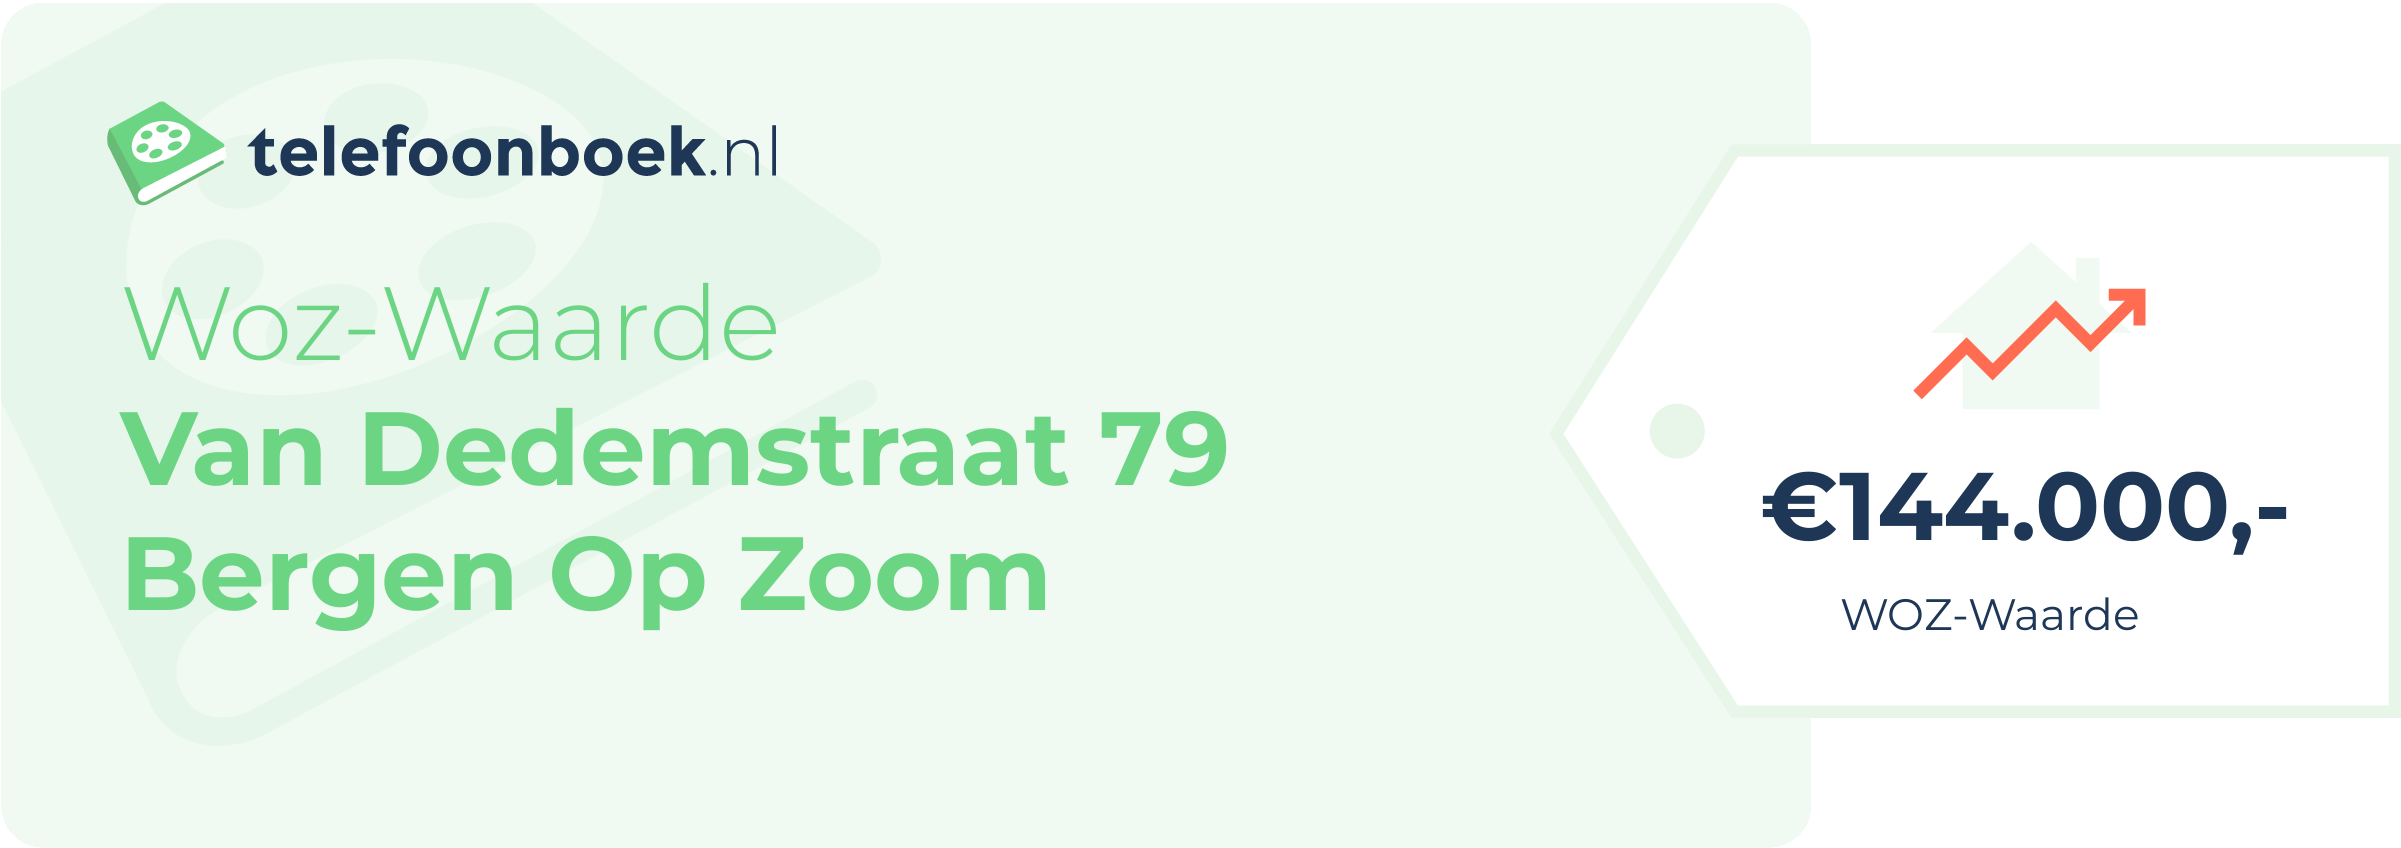 WOZ-waarde Van Dedemstraat 79 Bergen Op Zoom